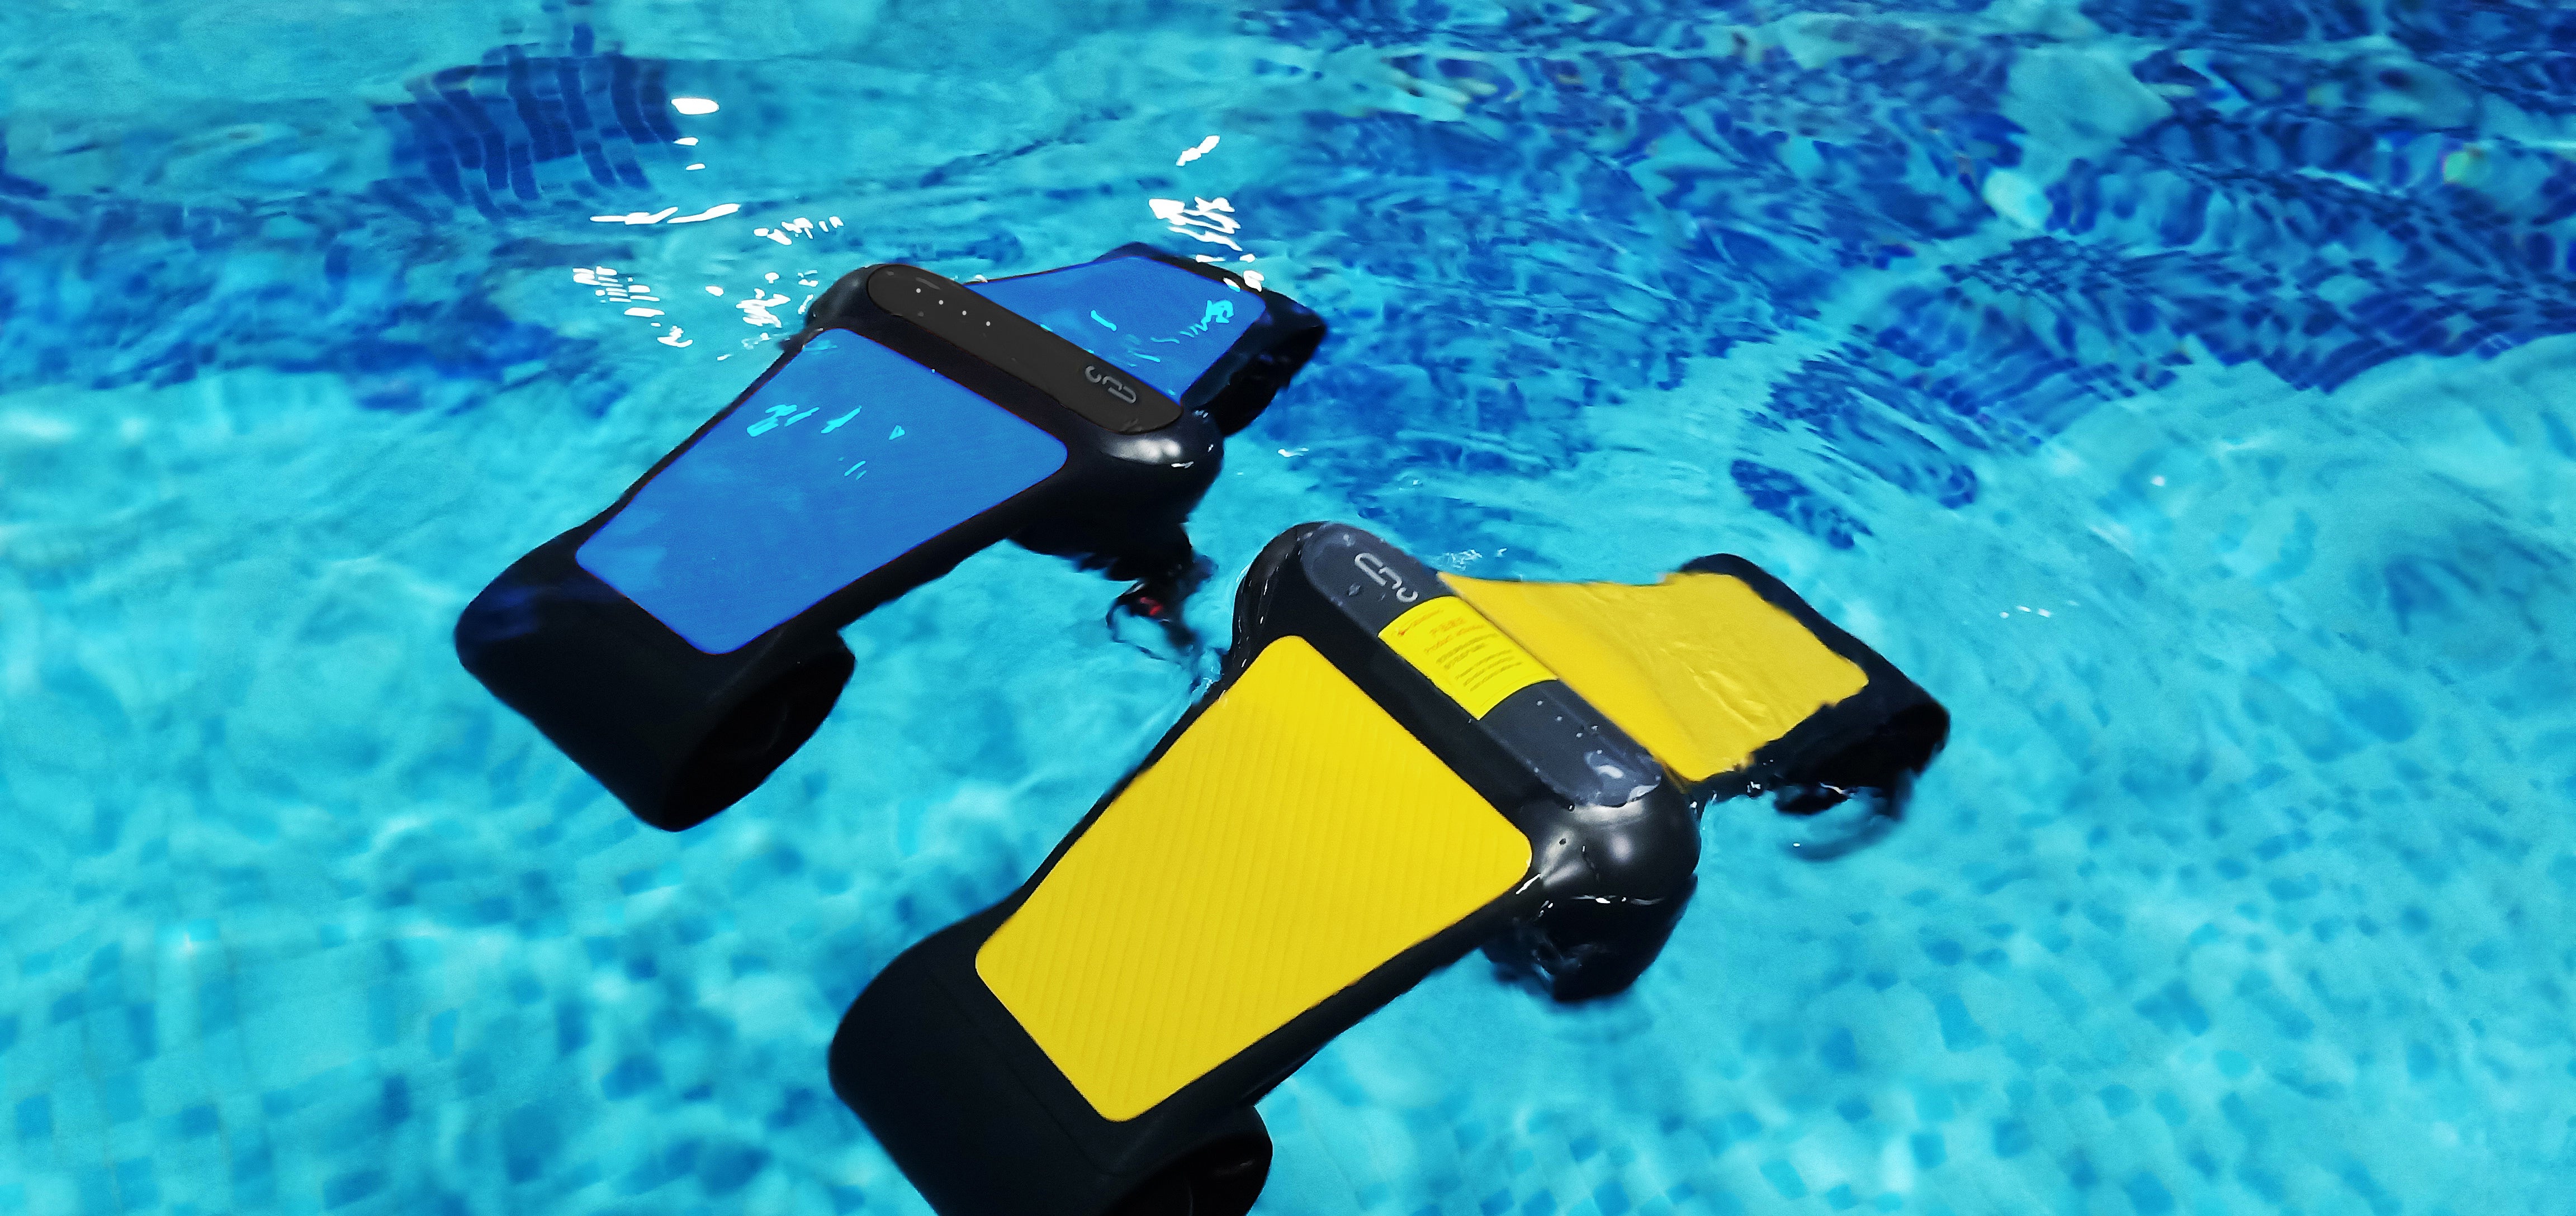 Geneinno S1 Pro Underwater Scooter